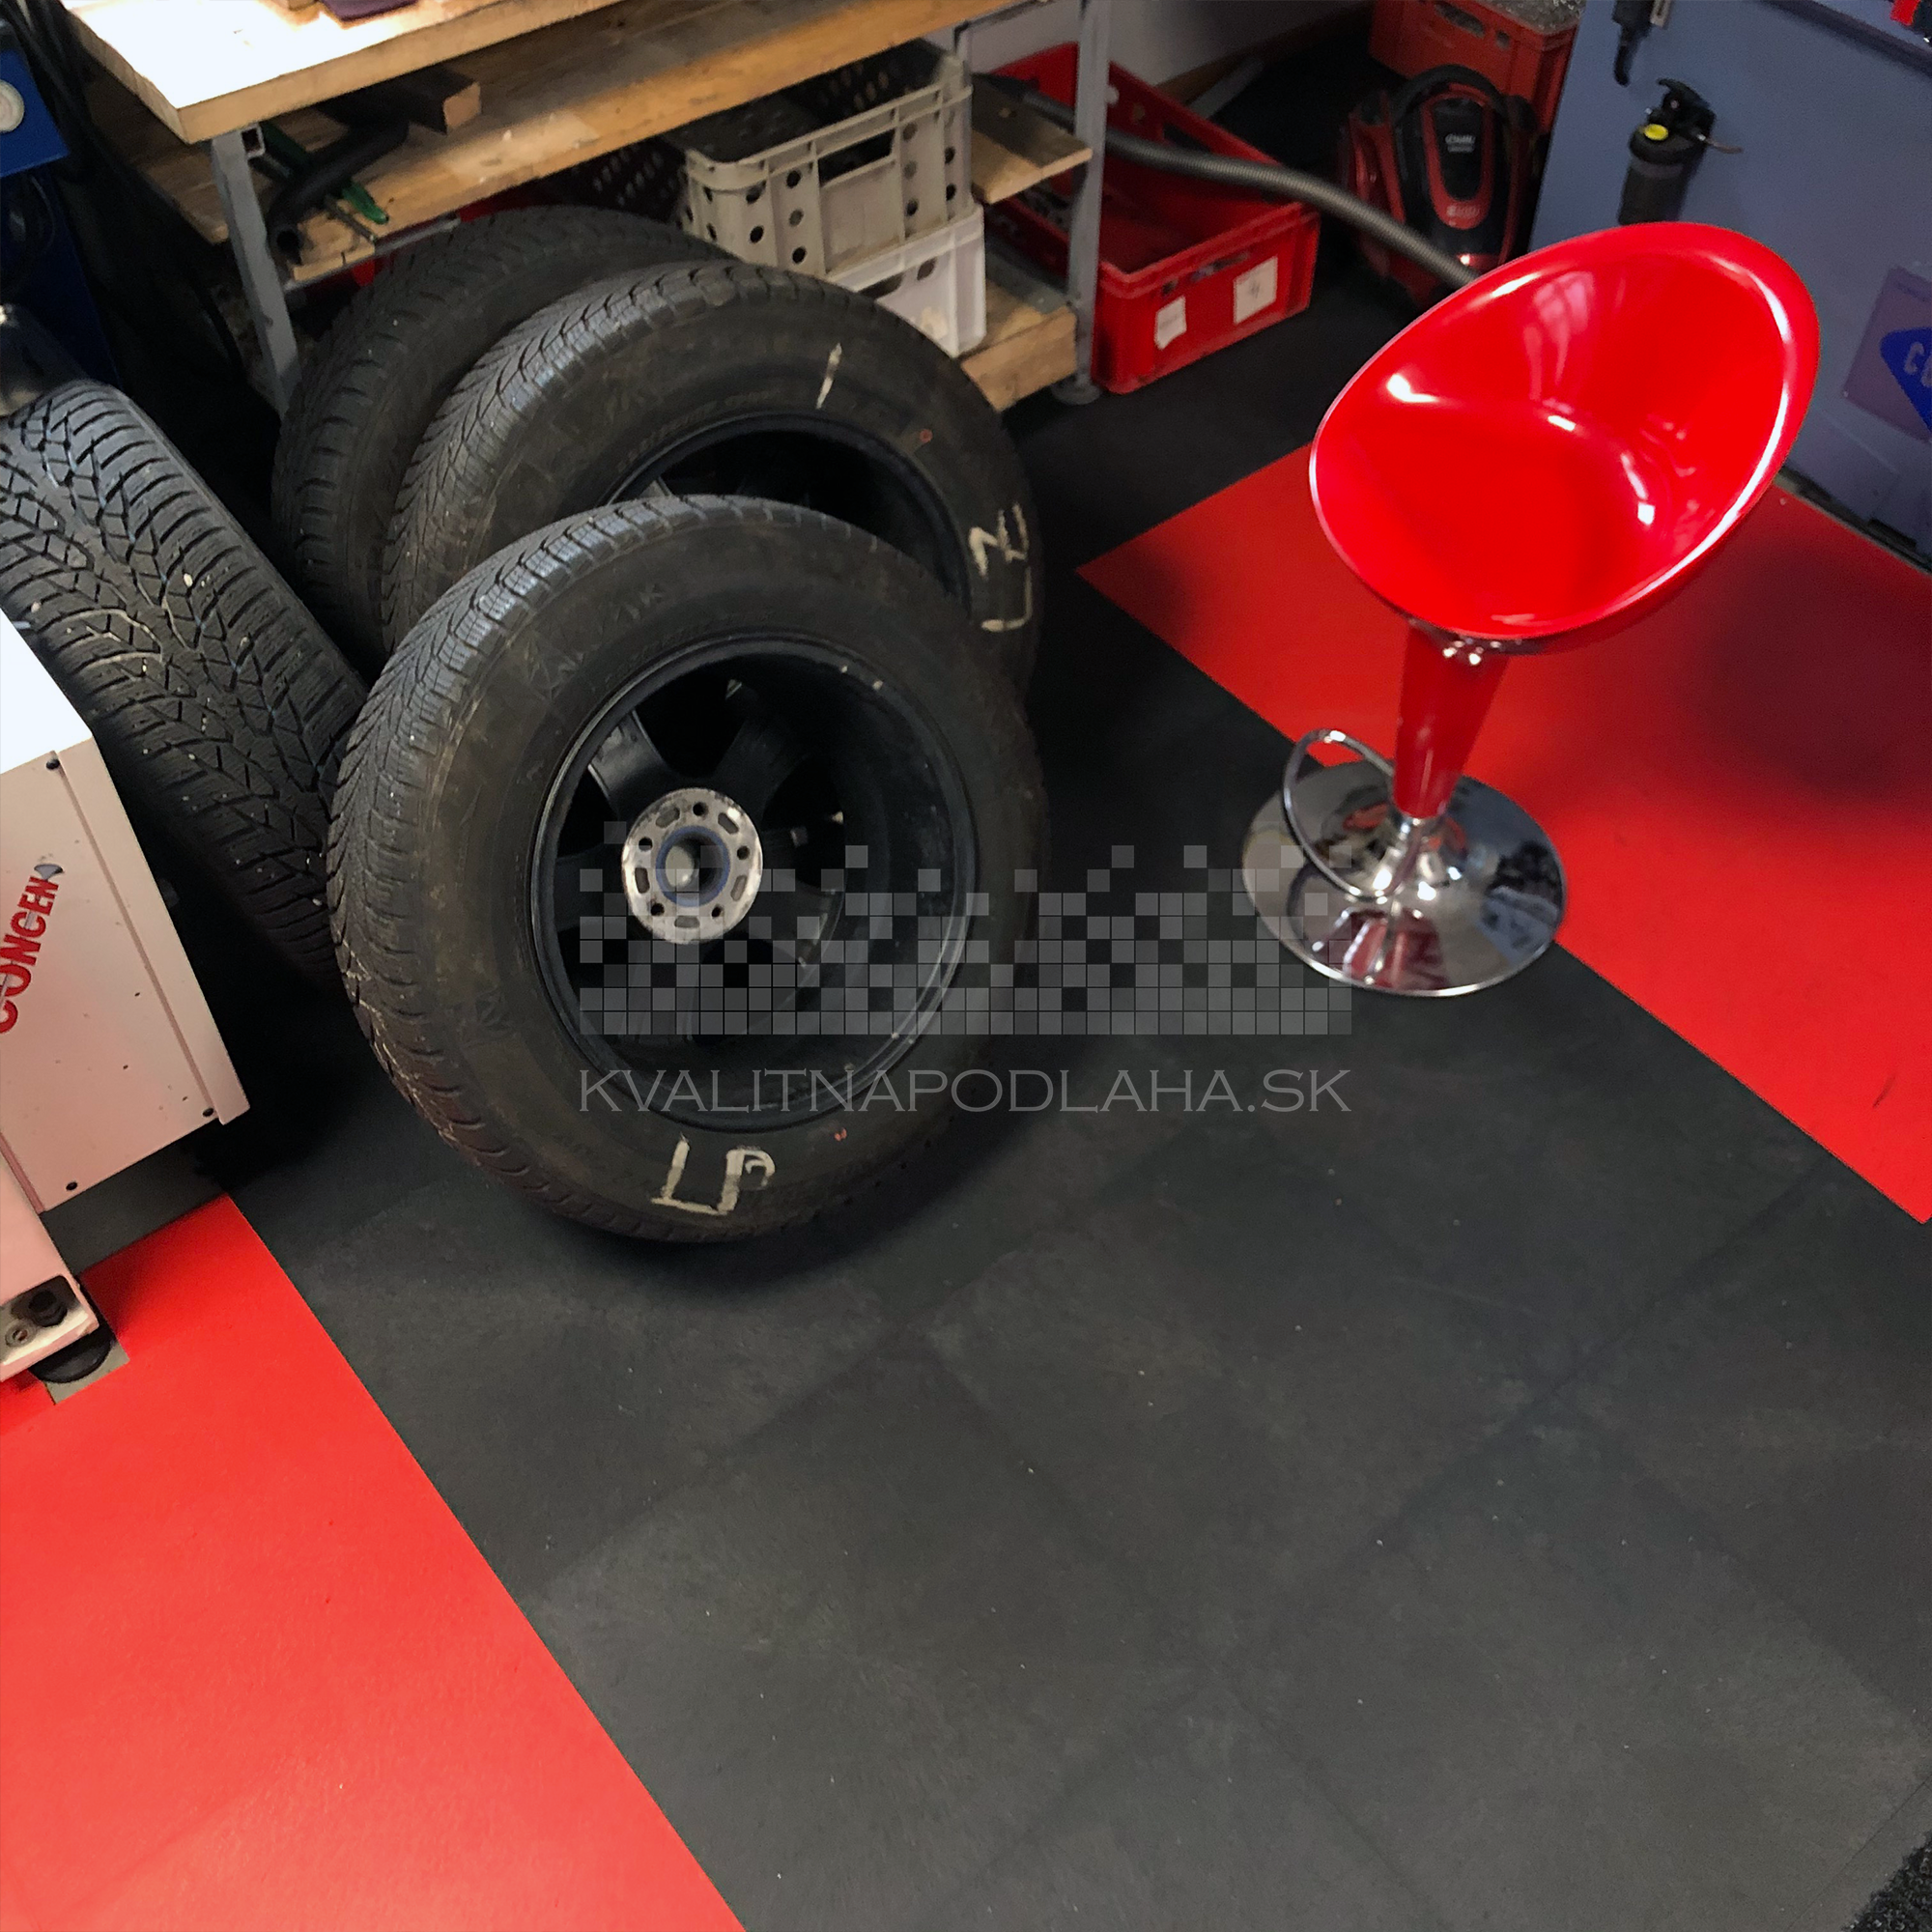 Odolná záťažová PVC podlaha Fortelock Invisible so skrytými zámkami v auto dielni.